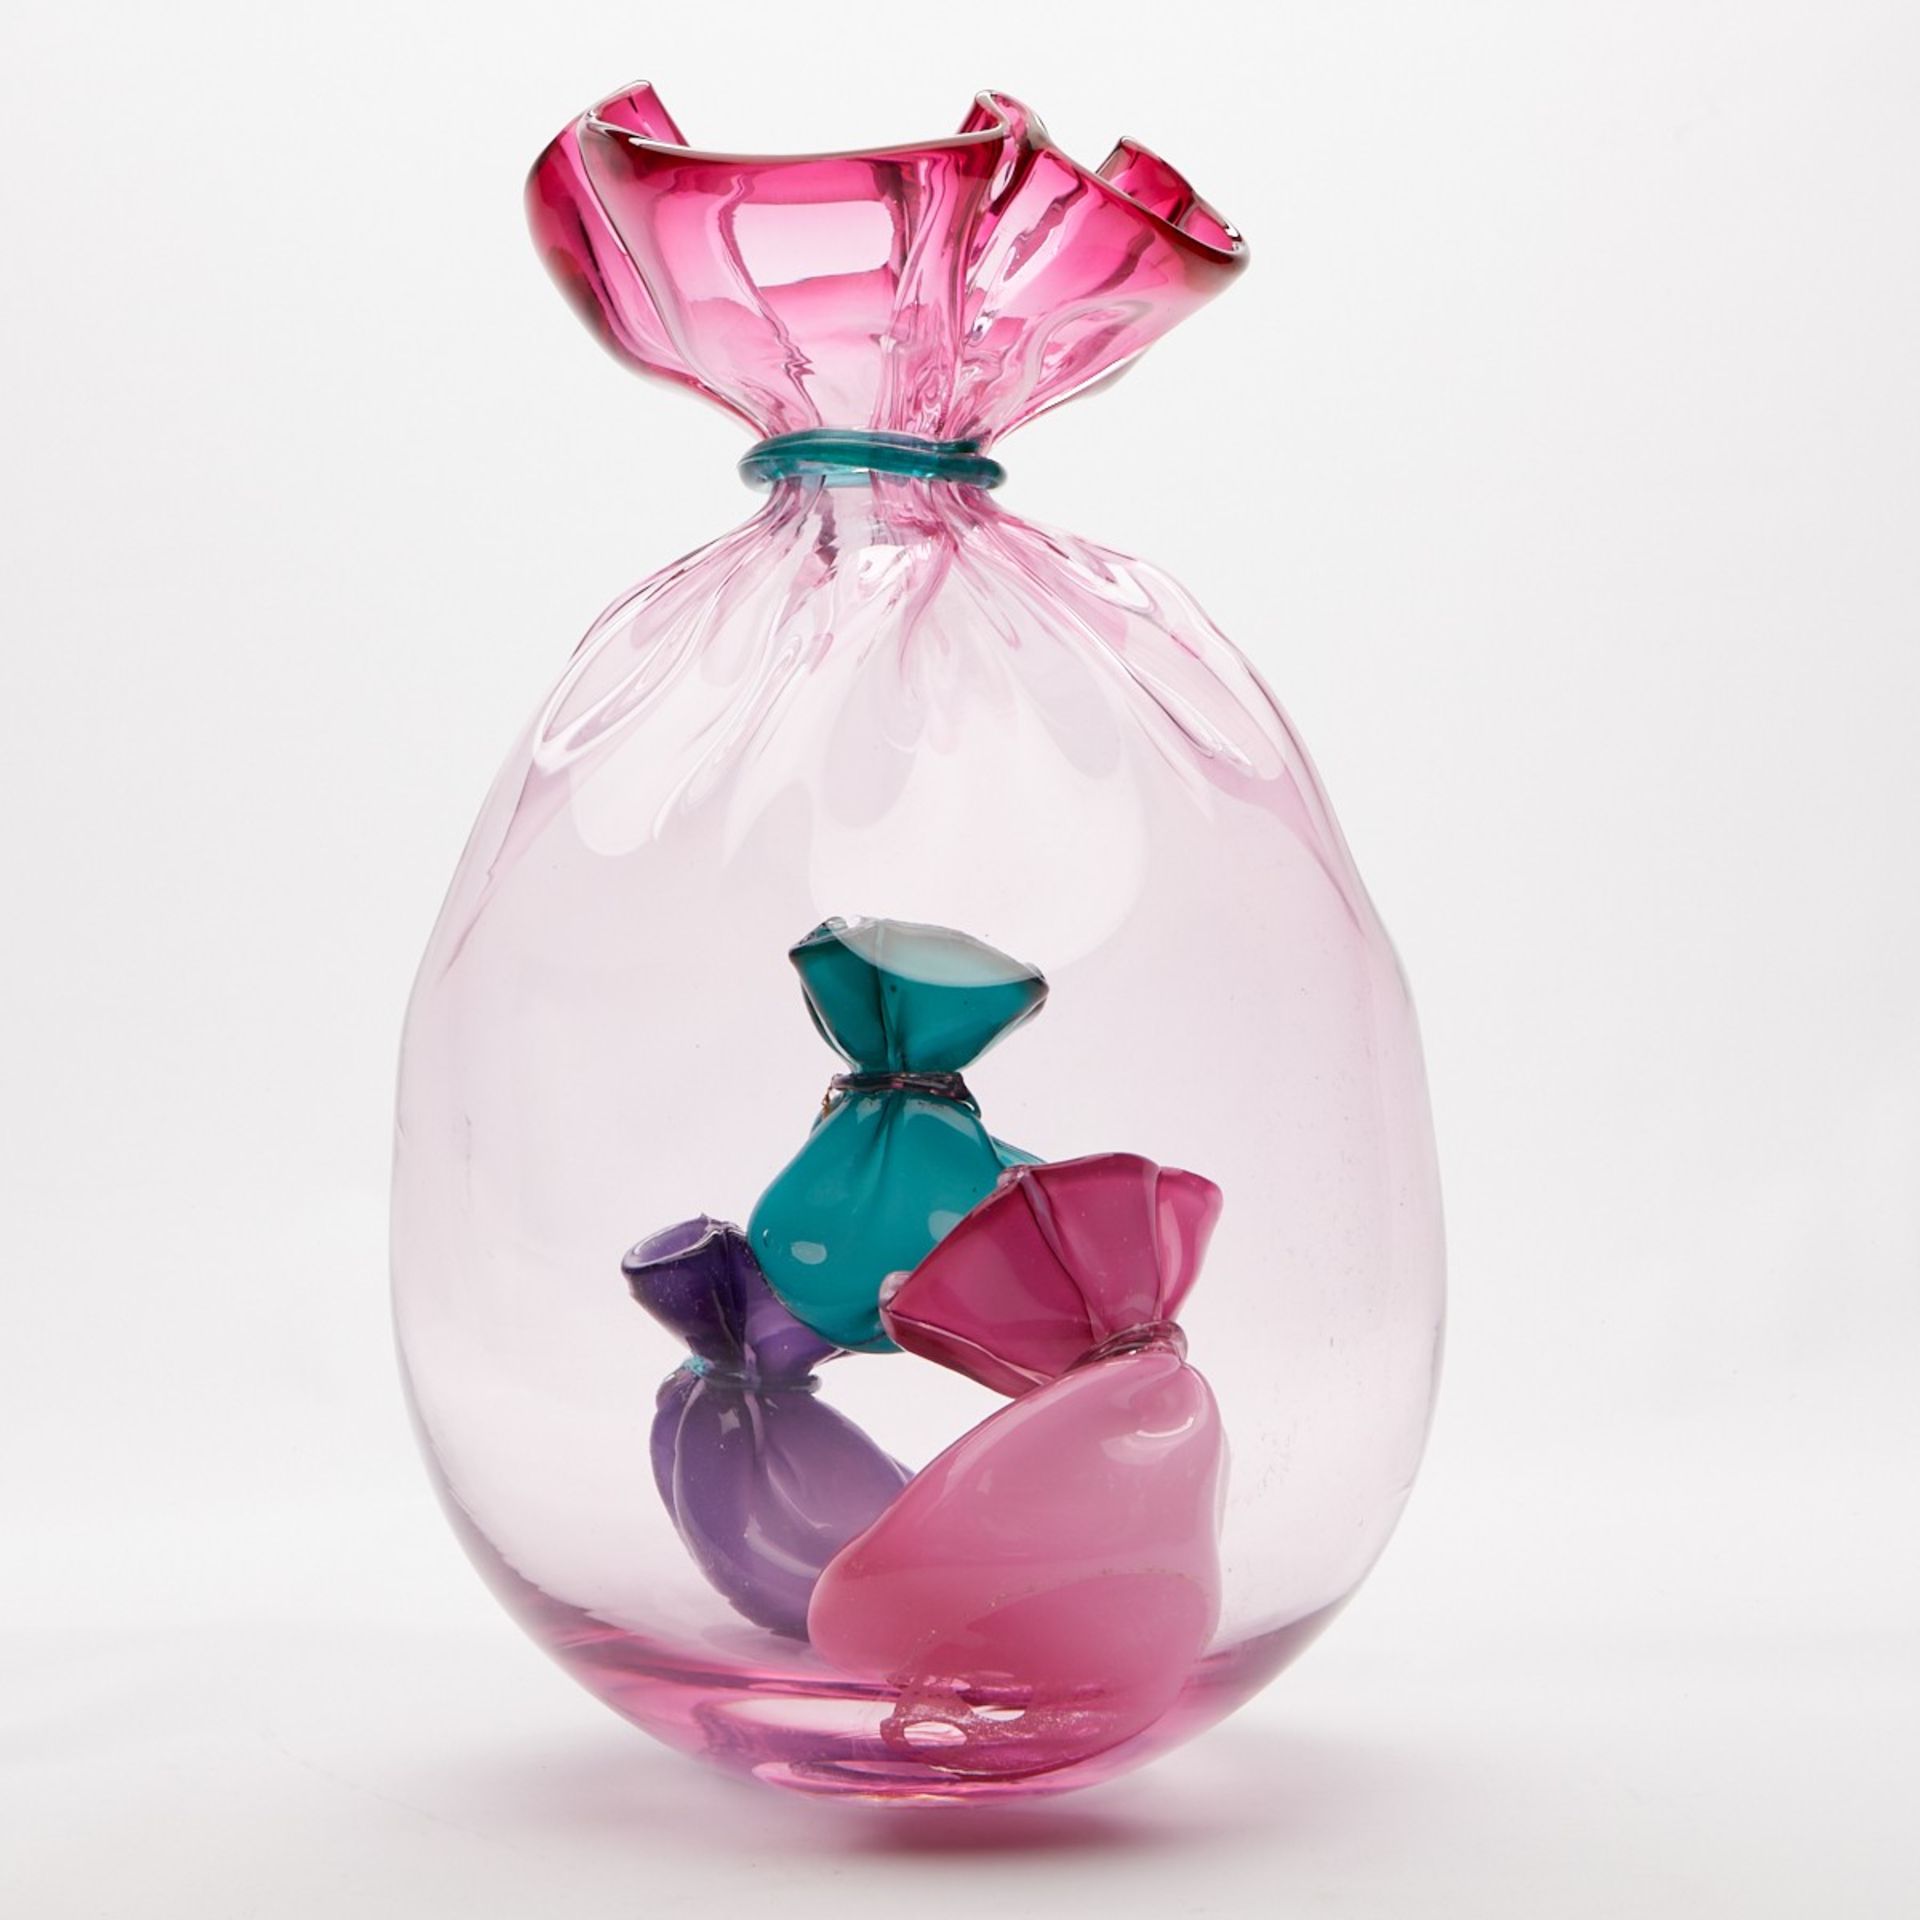 Littleton Vogel Glass Sculpture Soft Forms - Bild 3 aus 7